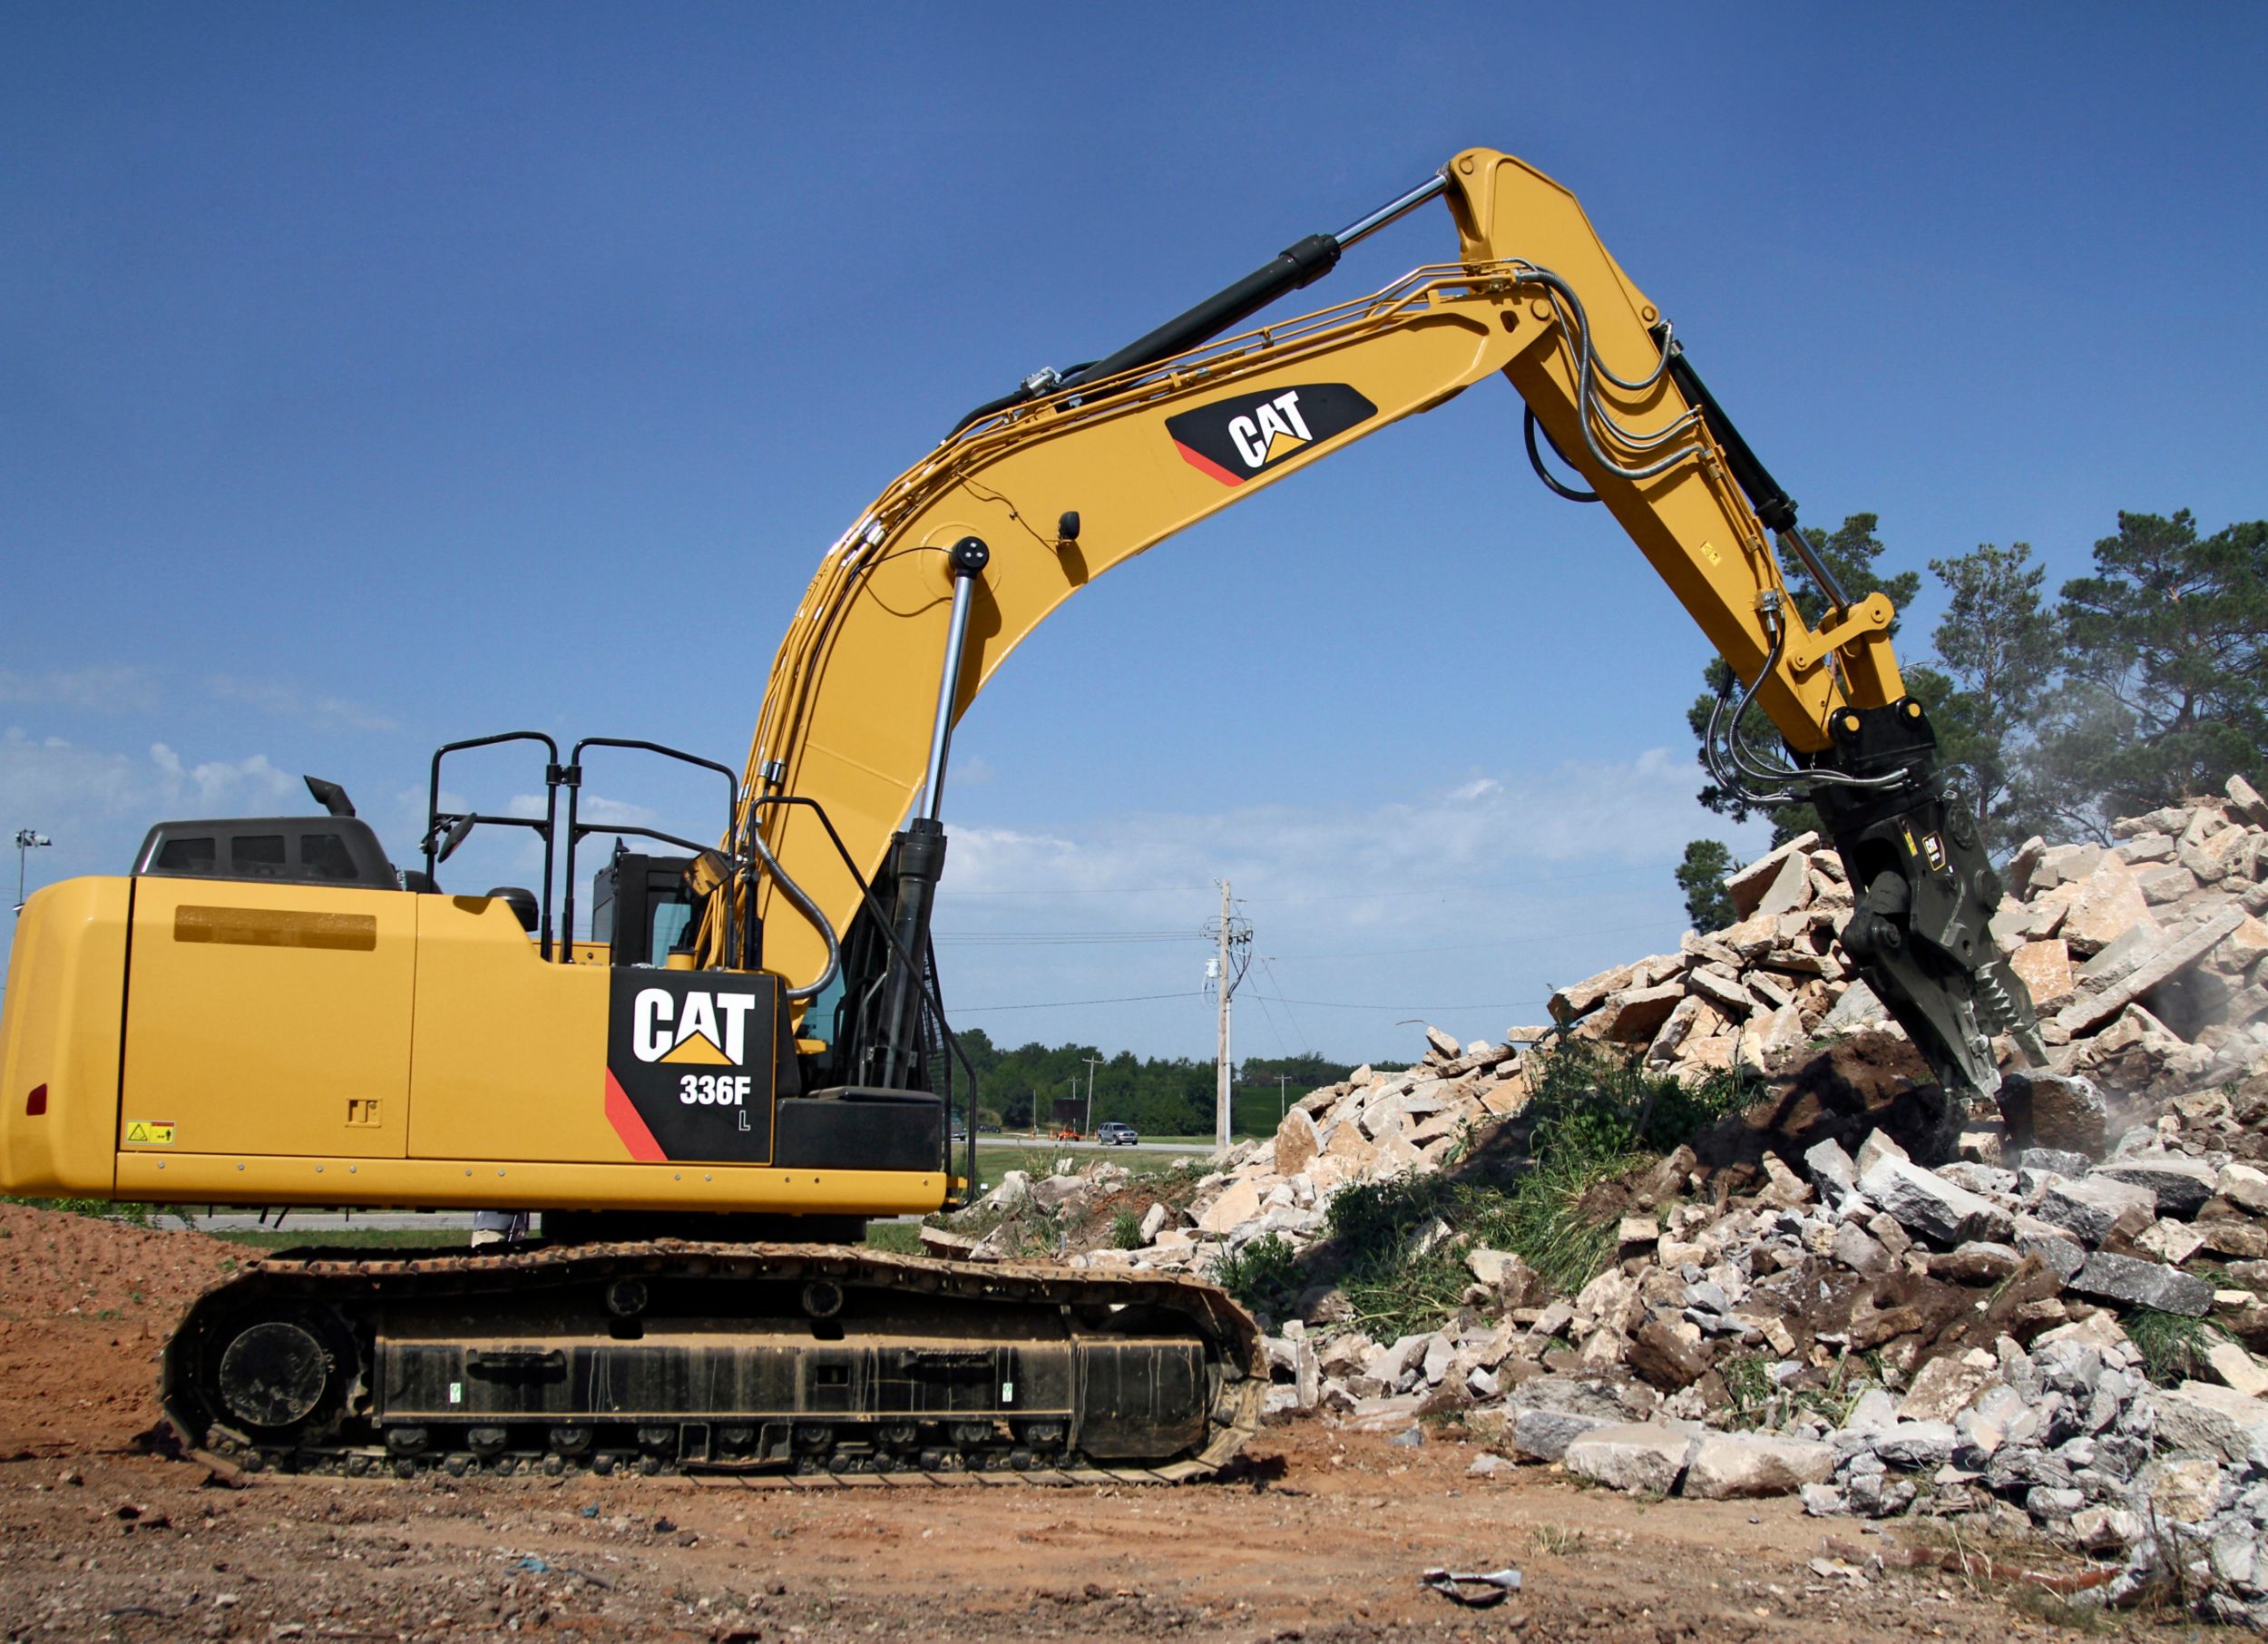 New Cat Large Excavators for Sale - Arkansas | Riggs Cat